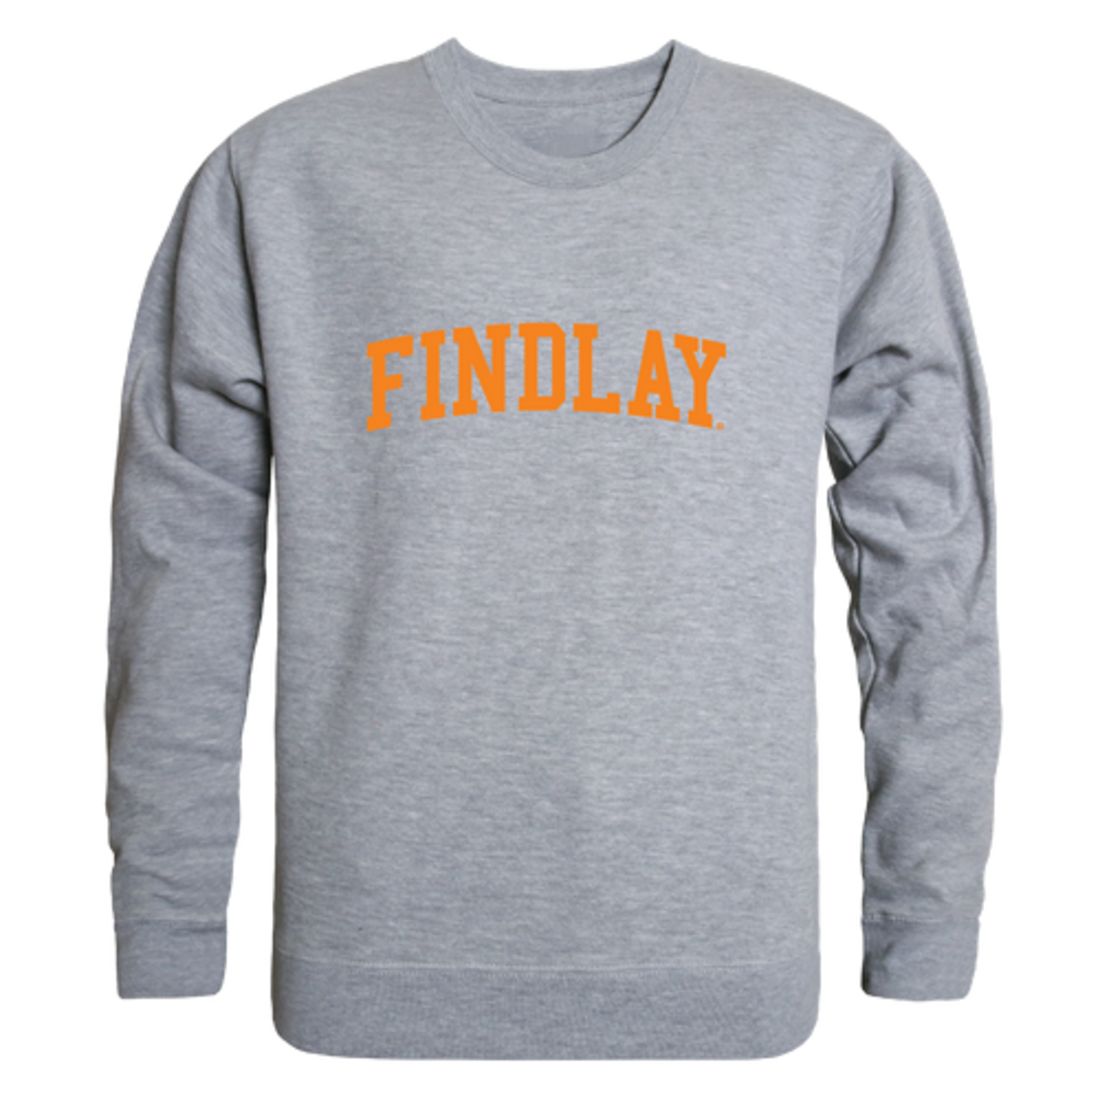 The University of Findlay Oilers Game Day Crewneck Sweatshirt